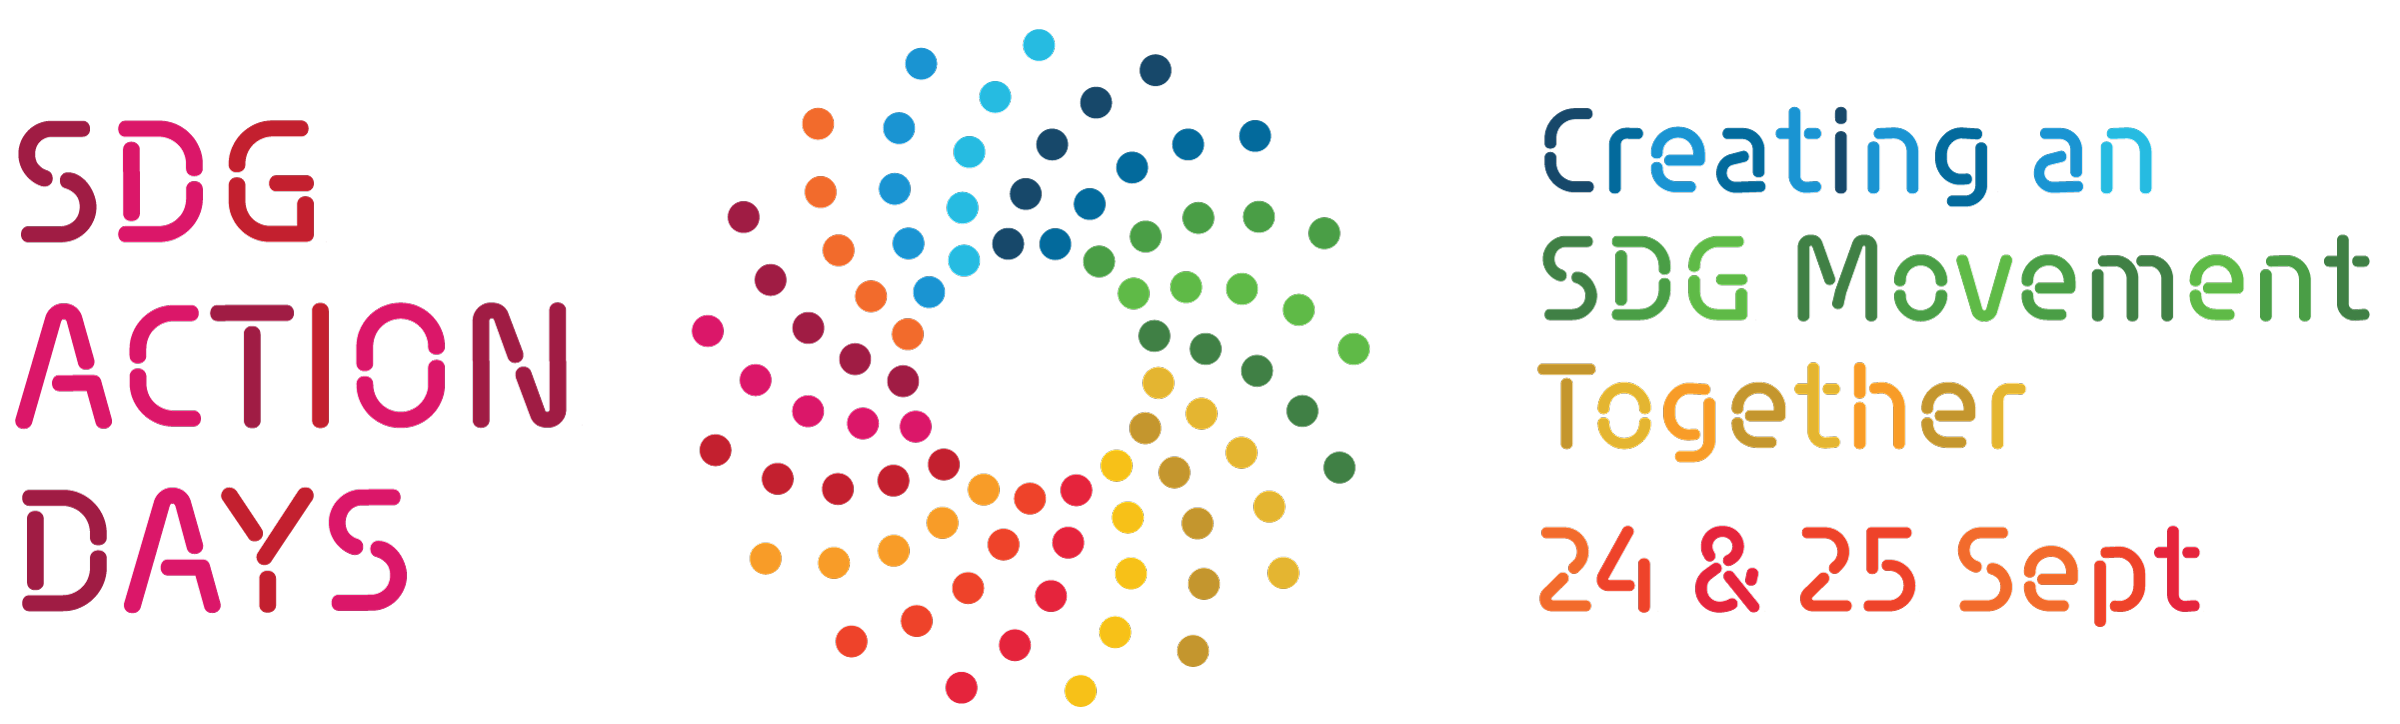 logo SDG Action Days 2021